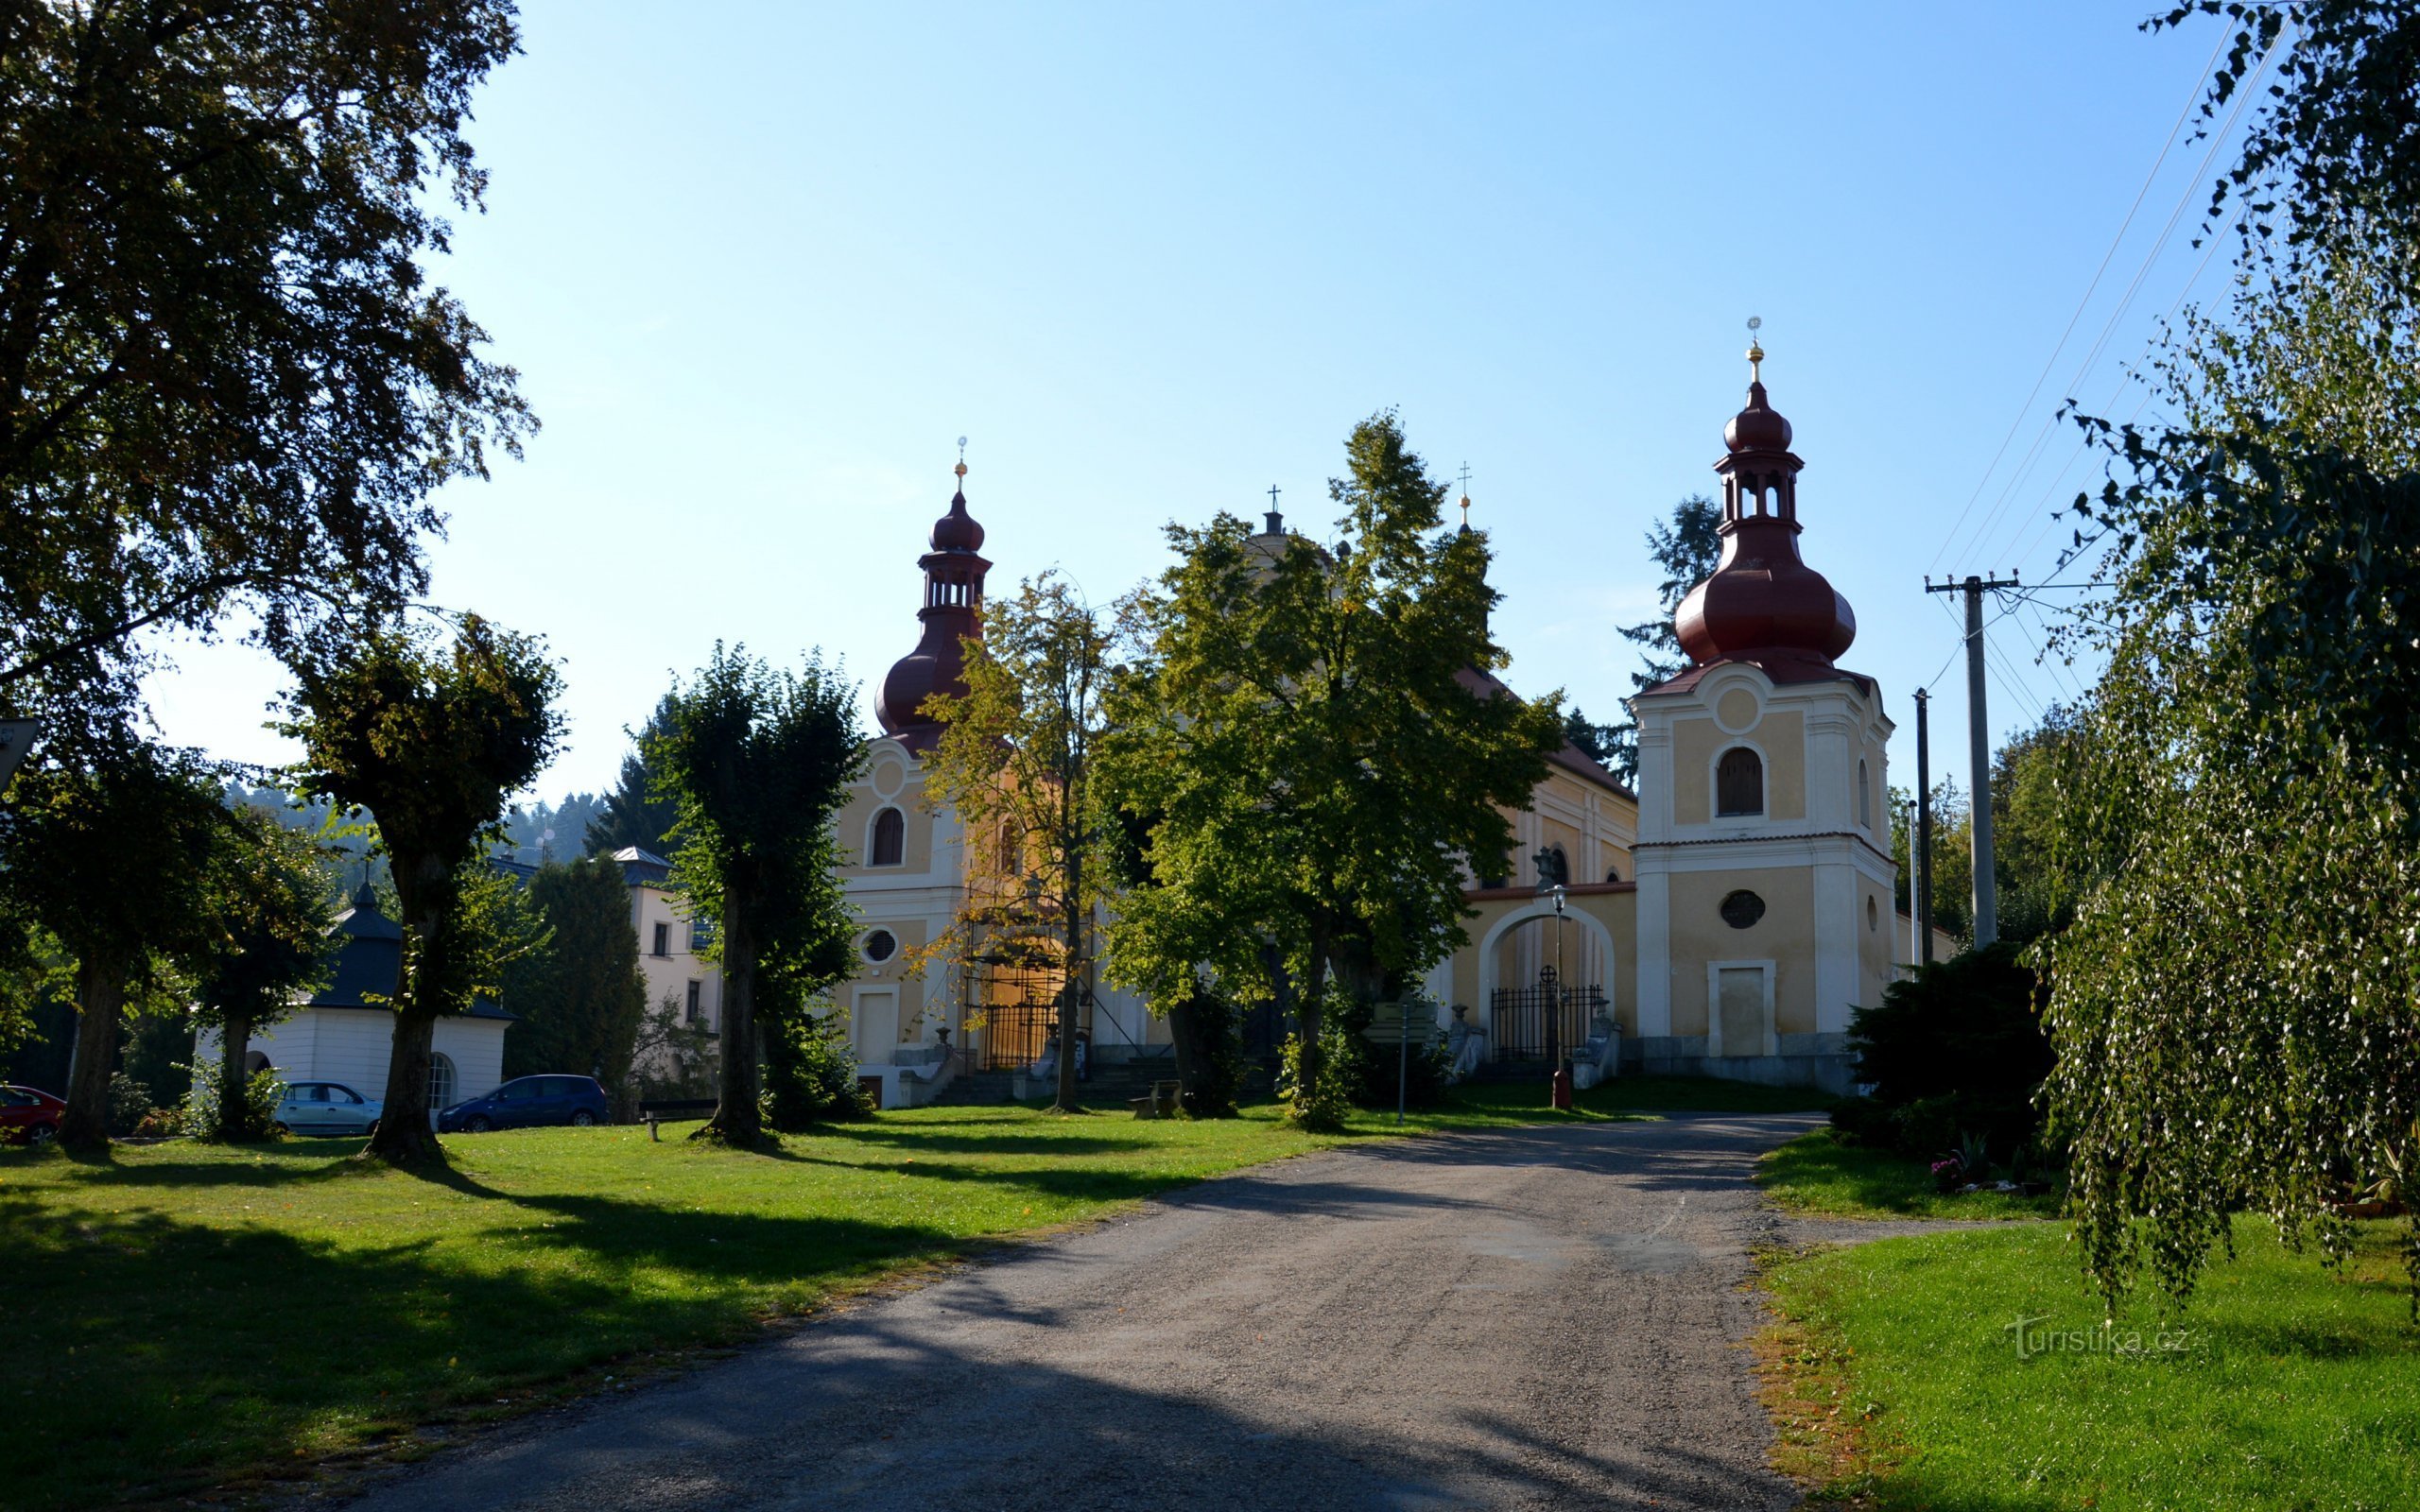 Sudějov - aukio, jossa on Pyhän Nikolauksen kirkko. Anne